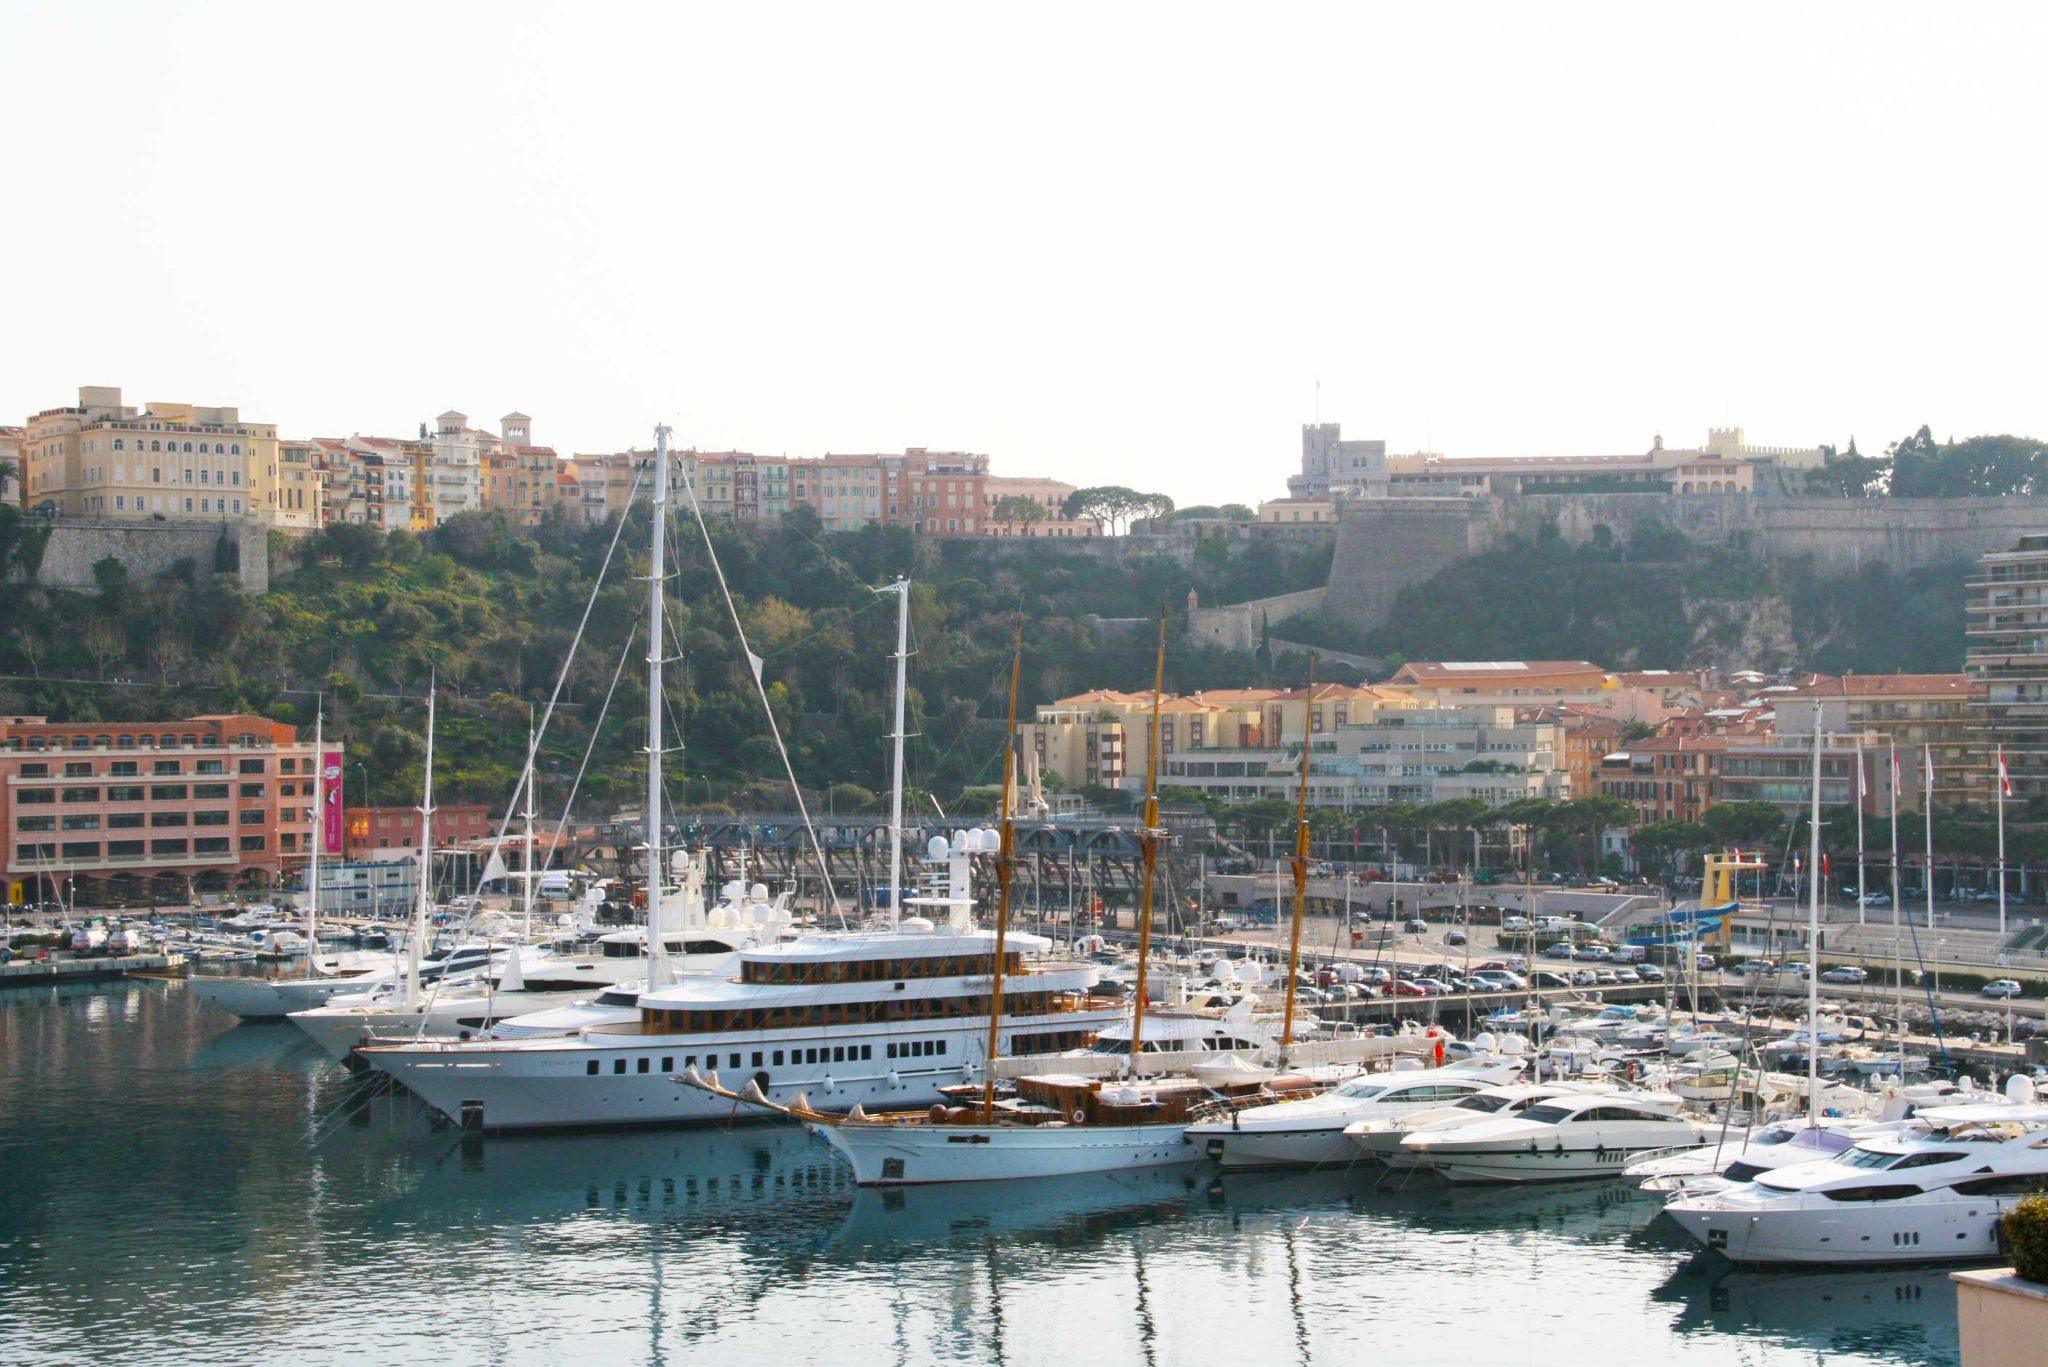 Boats in Monaco marina